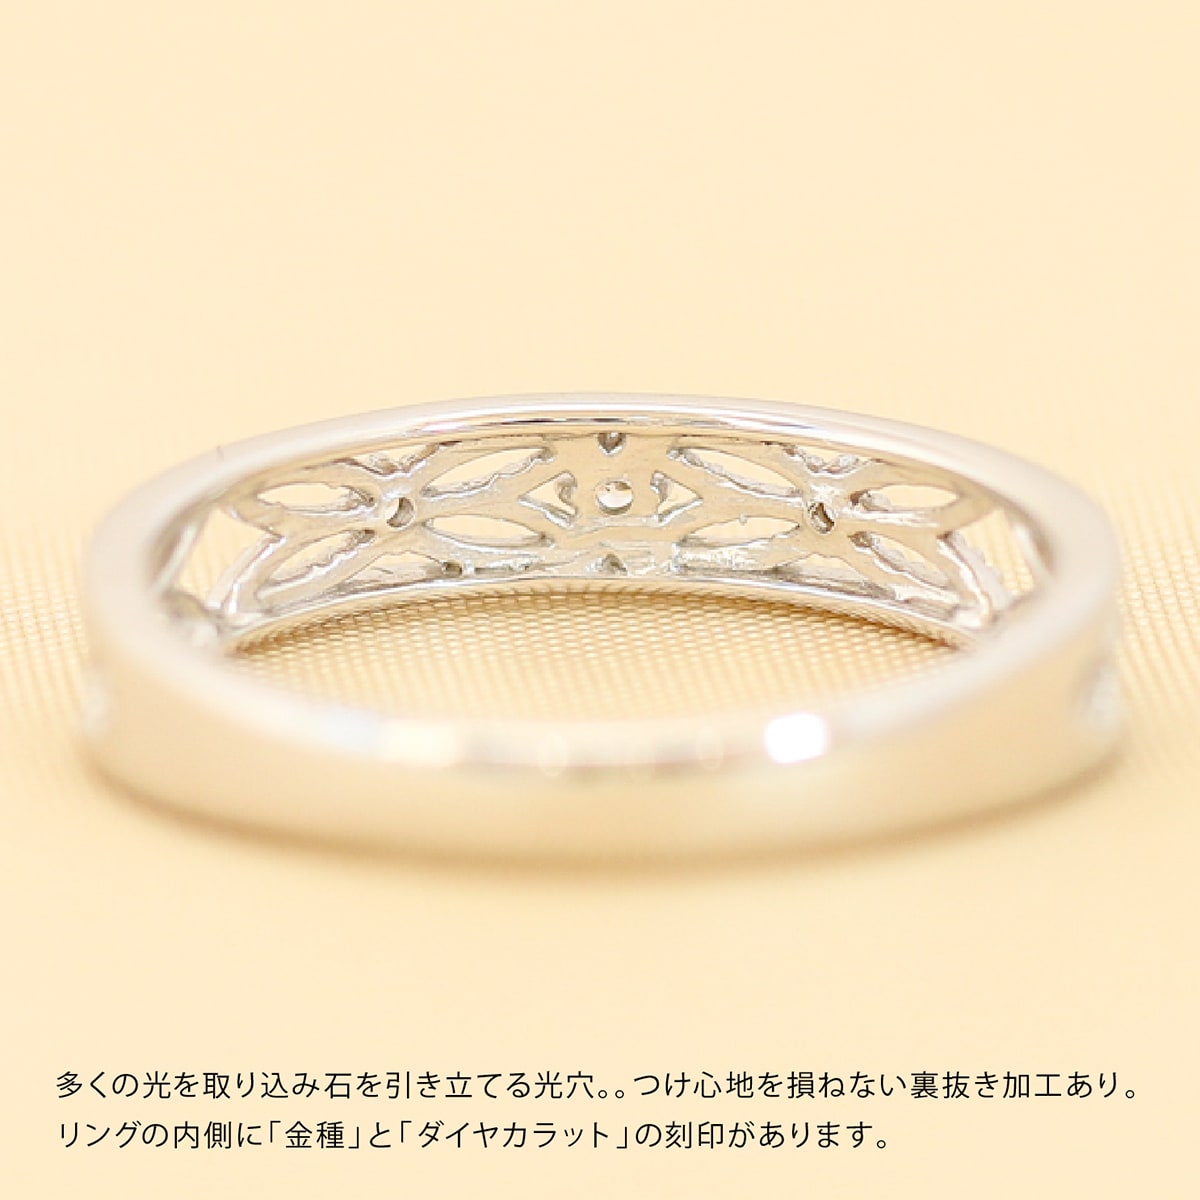 【楽天市場】ダイヤモンドリング シルバー925 シルバーリング ファッションリング 天然ダイヤ ダイヤモンド リング 品質保証書 金属